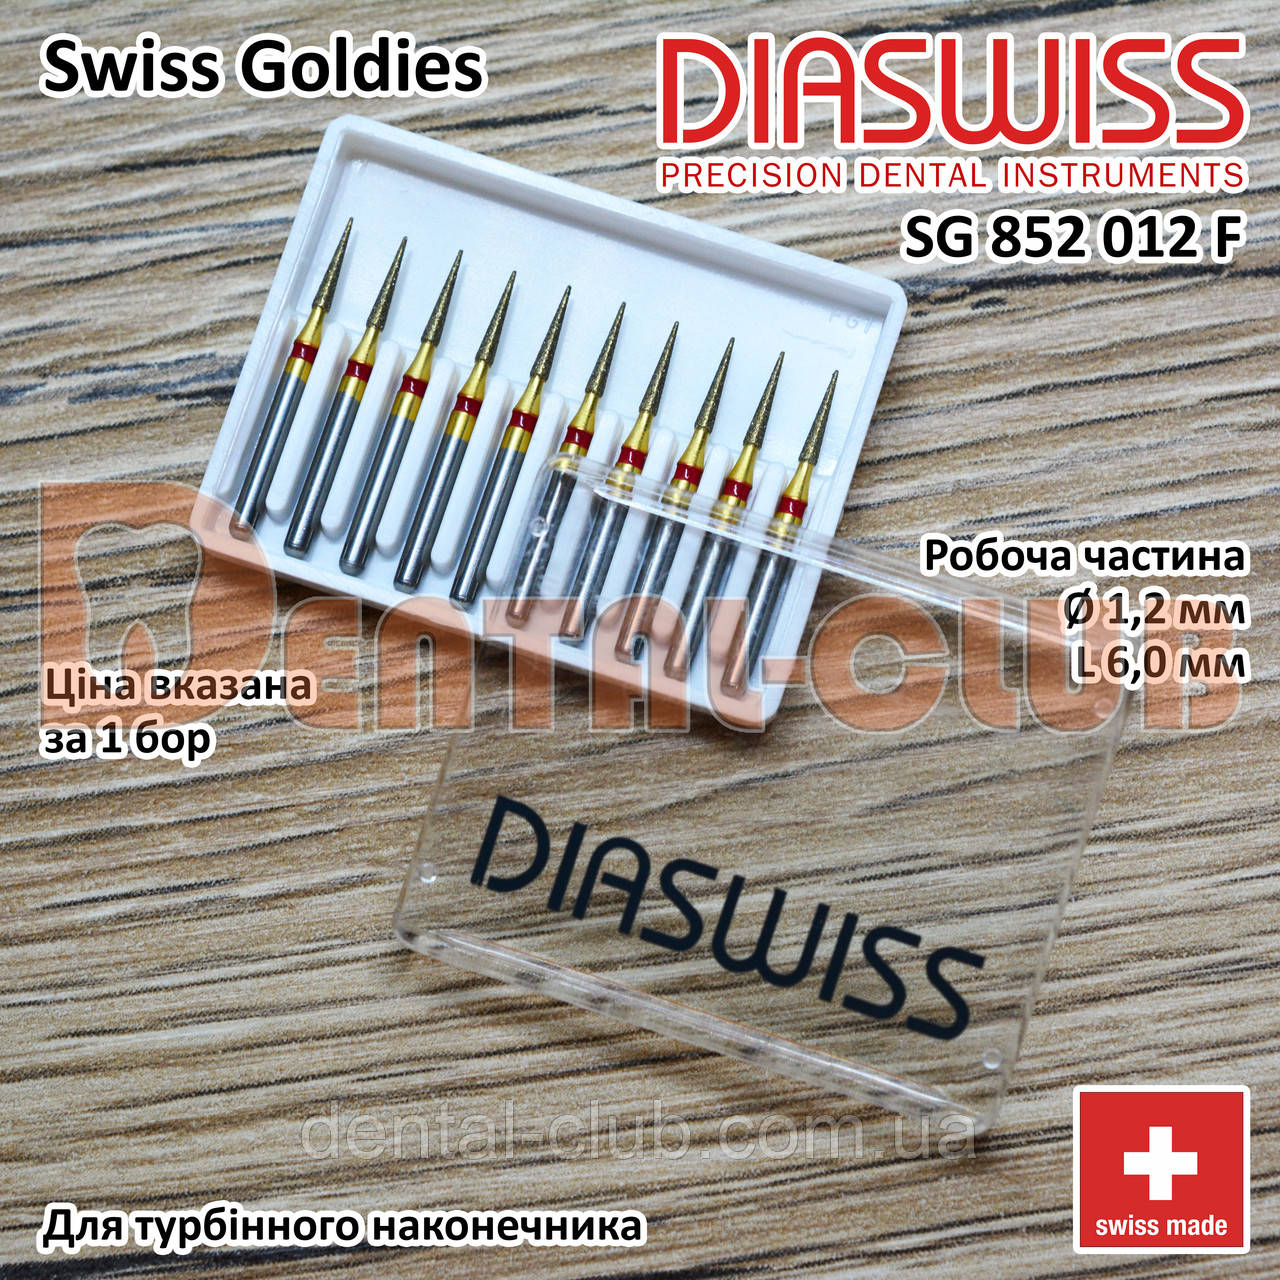 SG852/012 F - Swiss Goldies Diaswiss бор алмазний для турбіни (Діасвіс) Швейцарія цін/кат 3